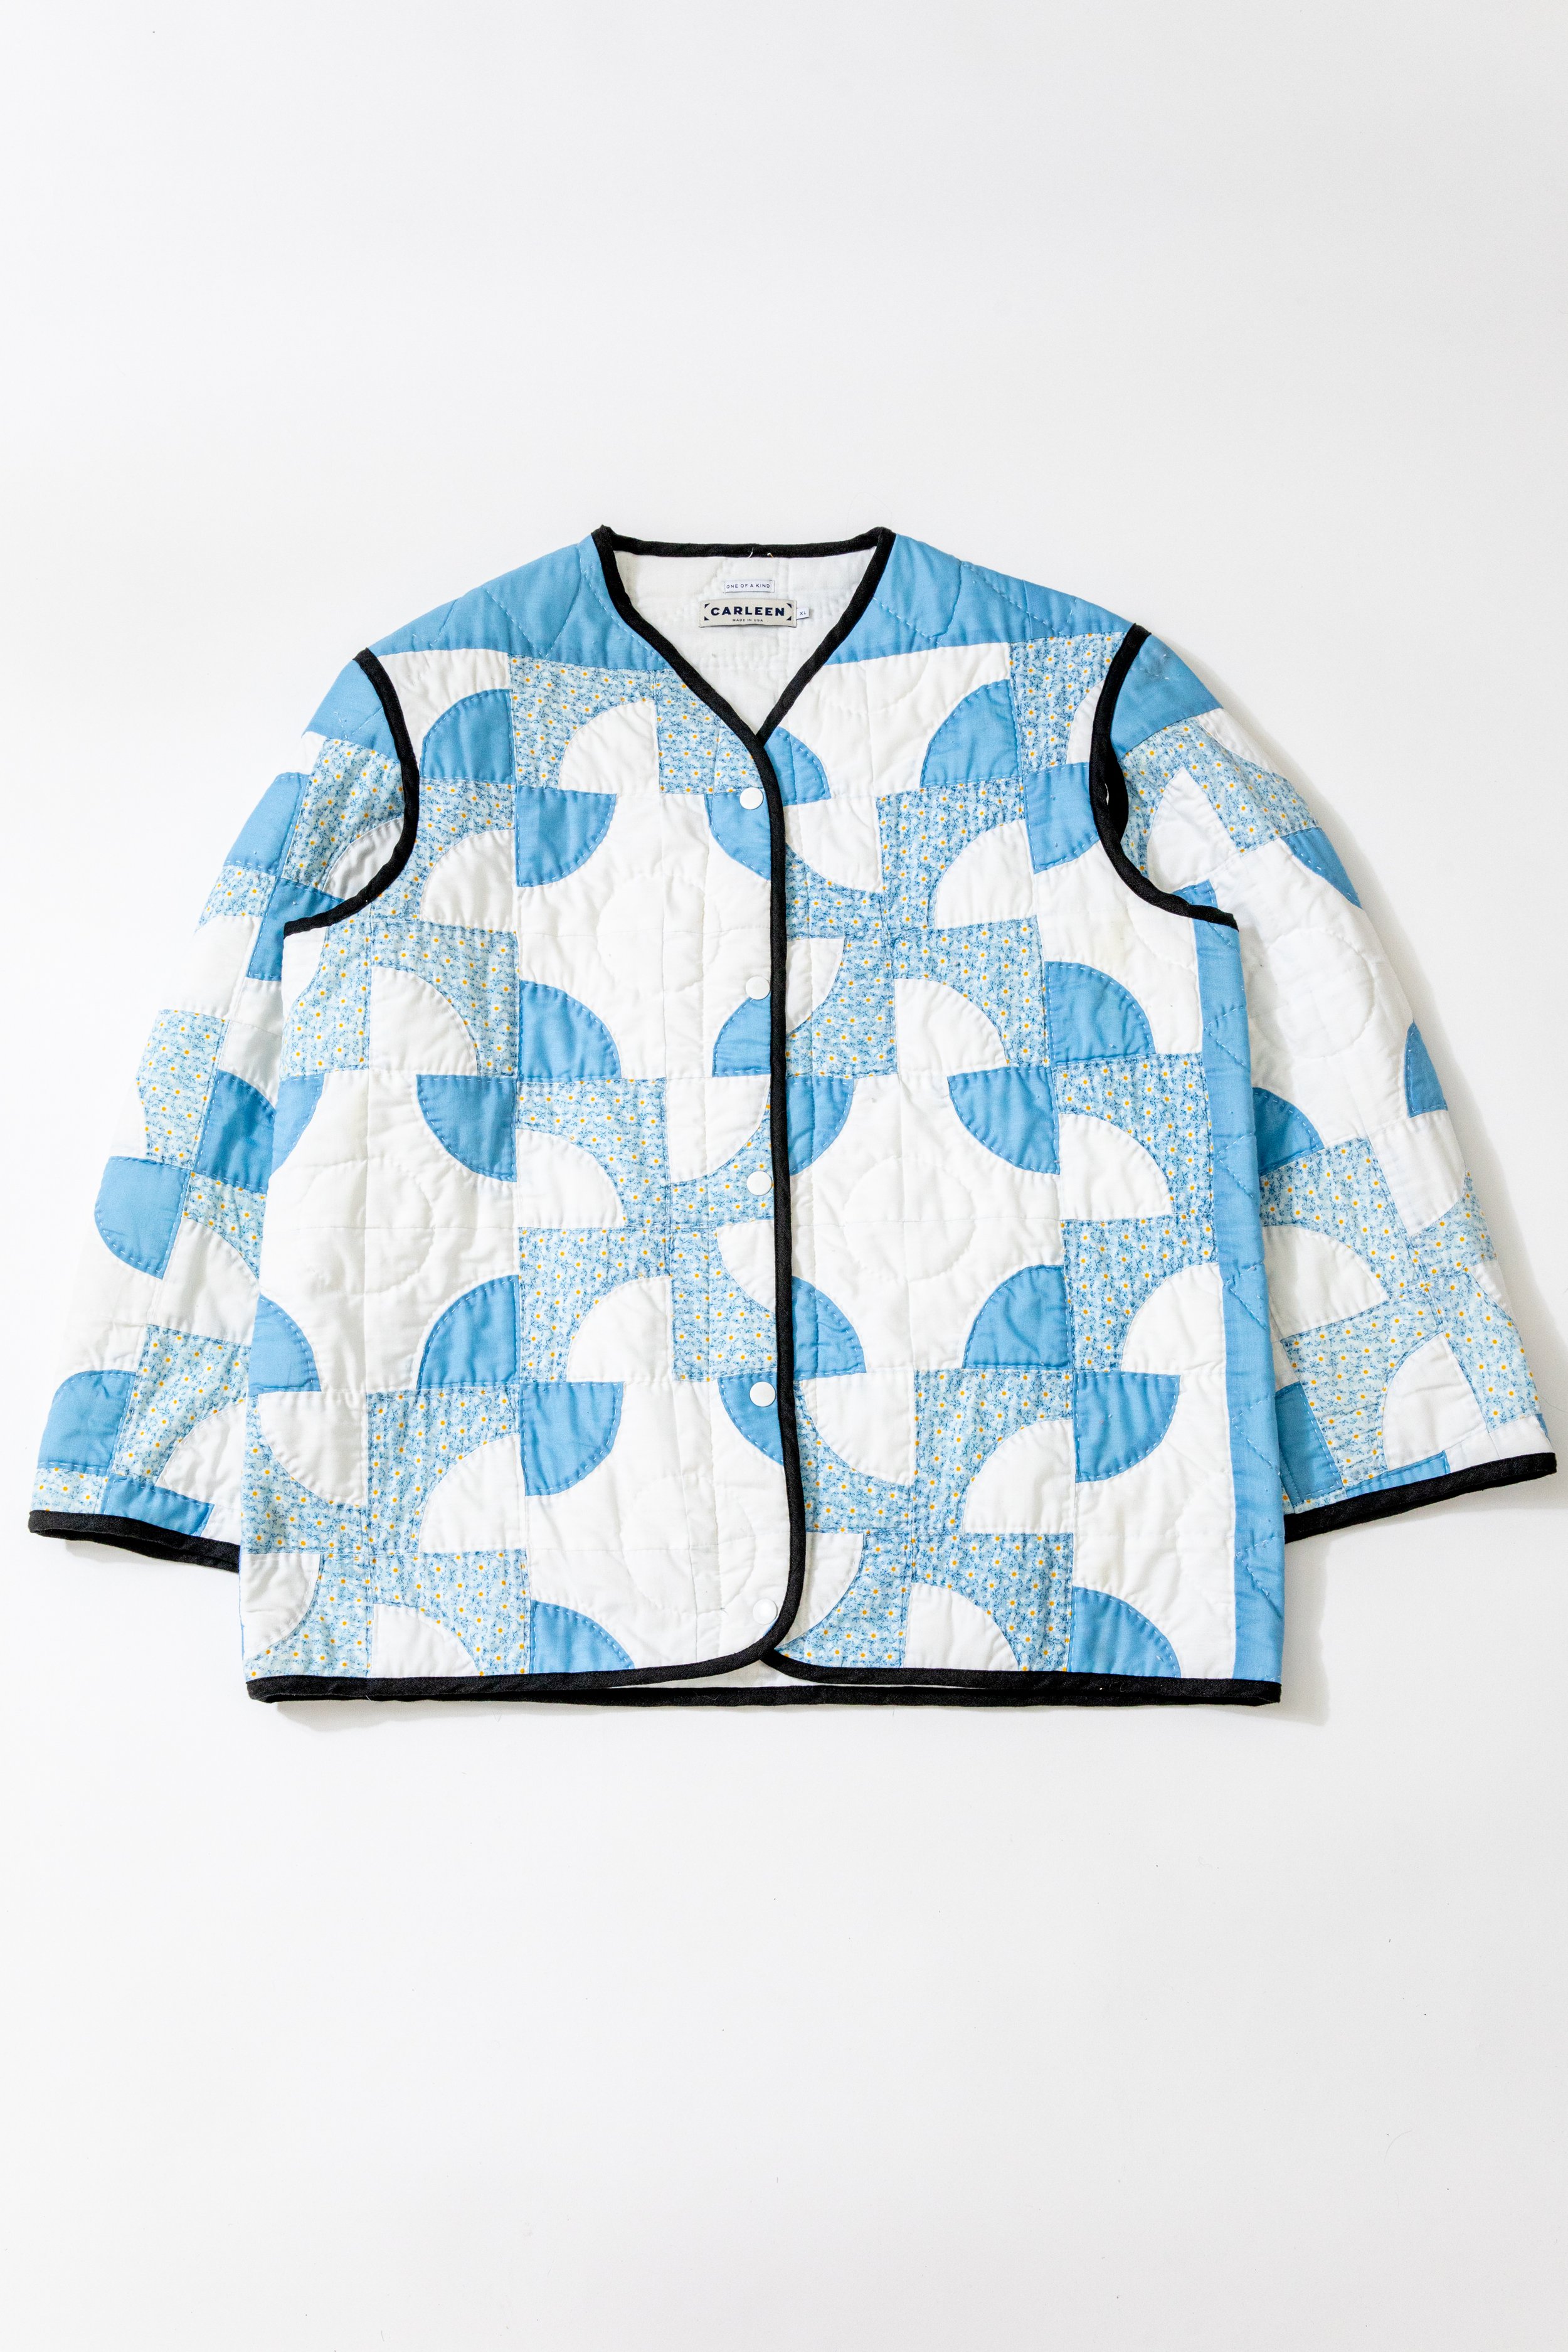 Quilt Liner Jacket - XLarge (Blue Waves) — CARLEEN